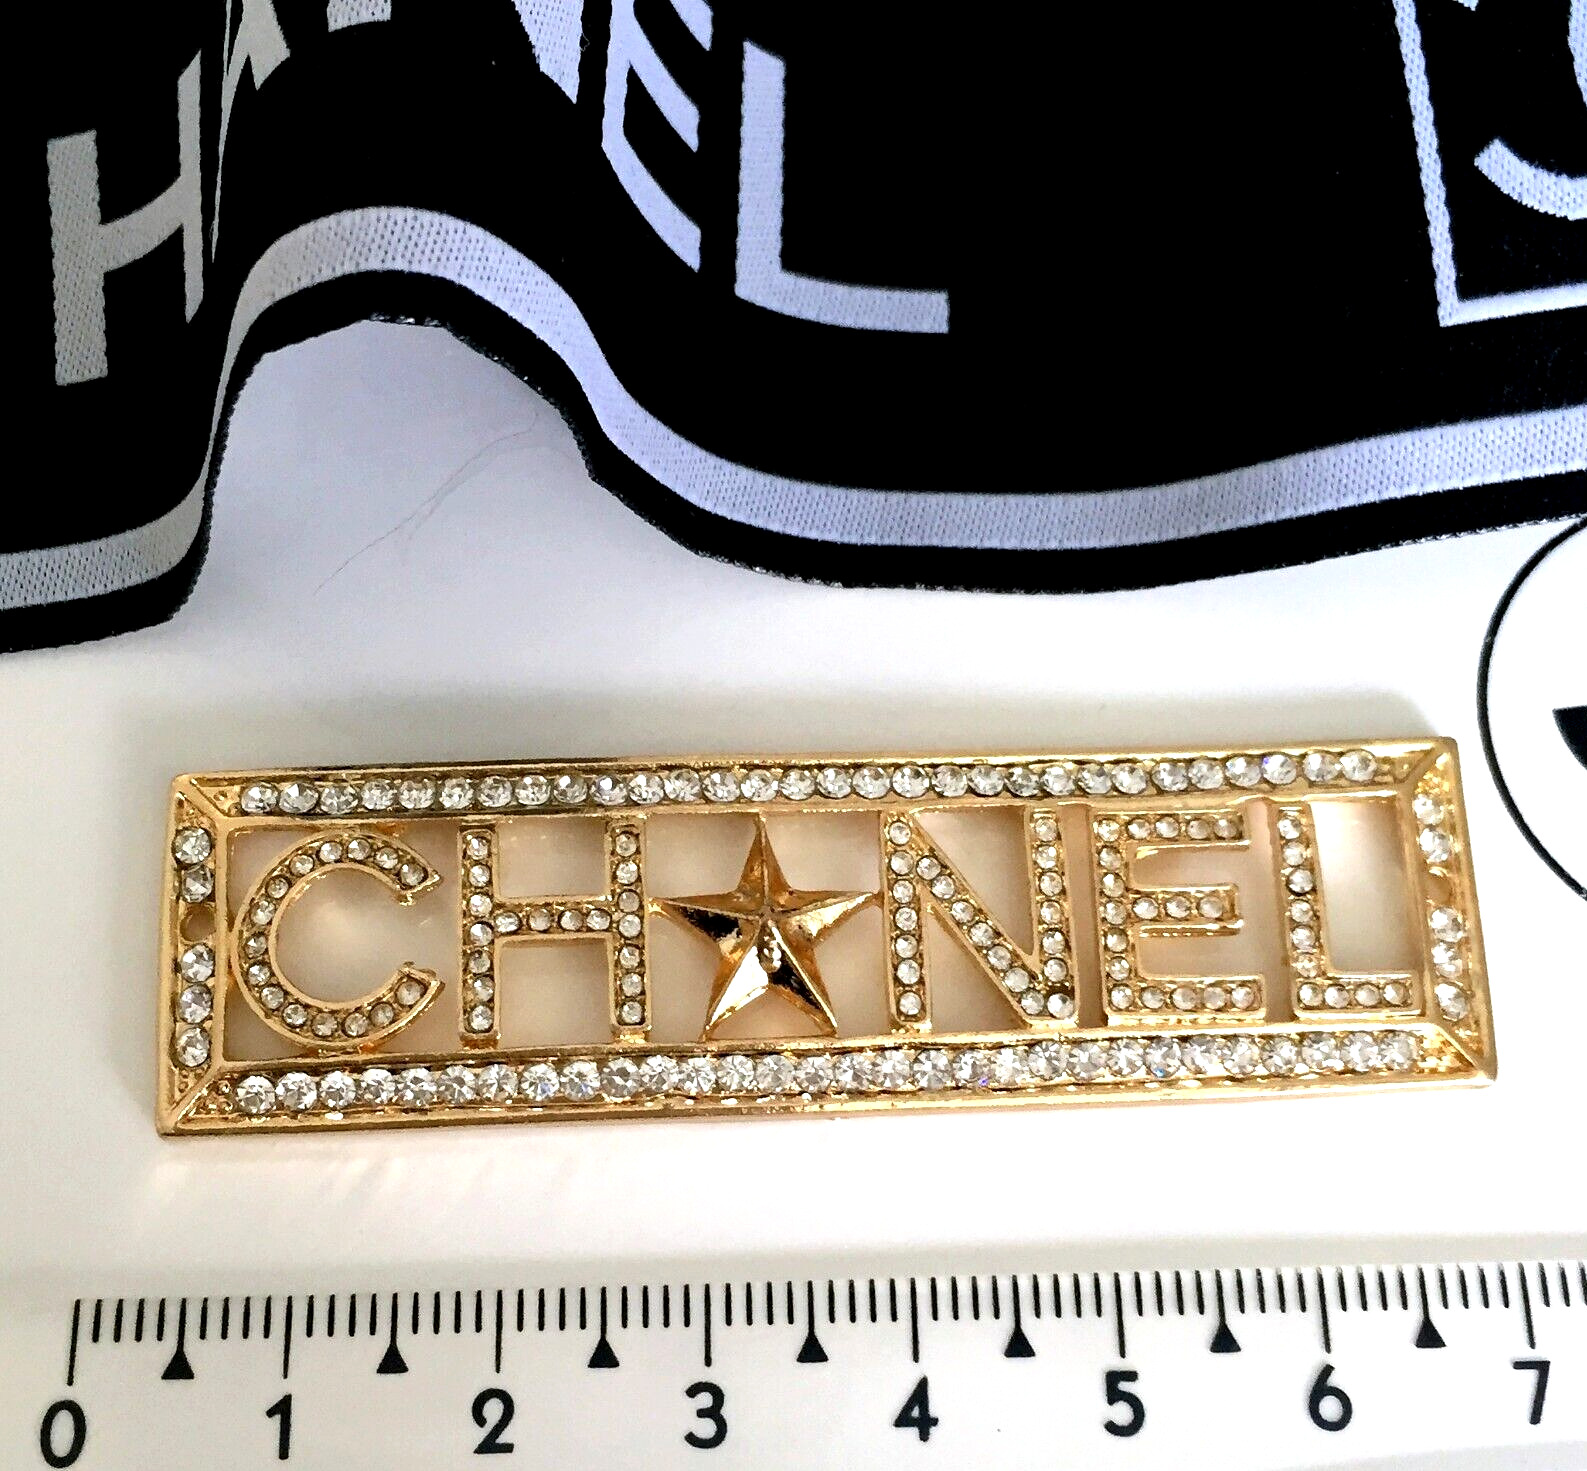 1 Vintage original large 18 x 67 mm Chanel CC Logo gold tone button 2 holes